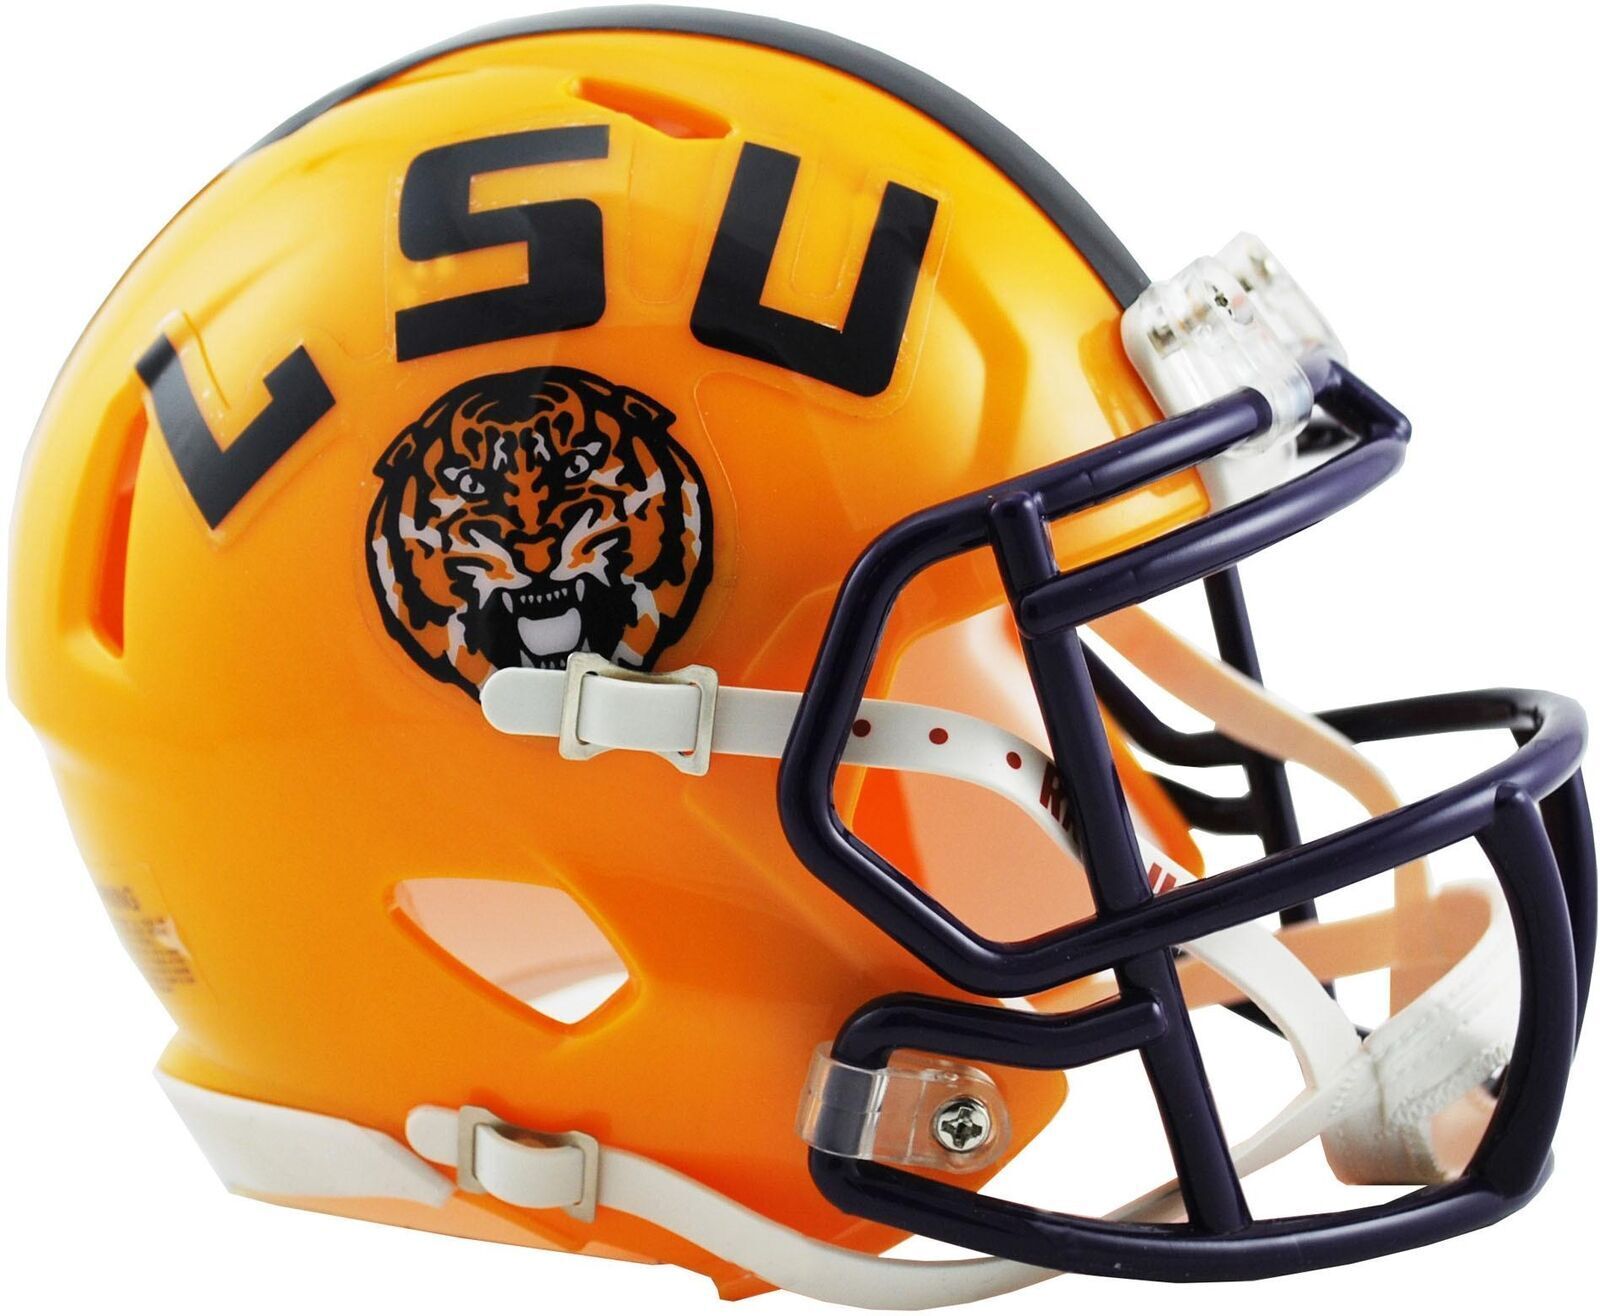 LSU Tigers NCAA Riddell Speed Mini Helmet New in box